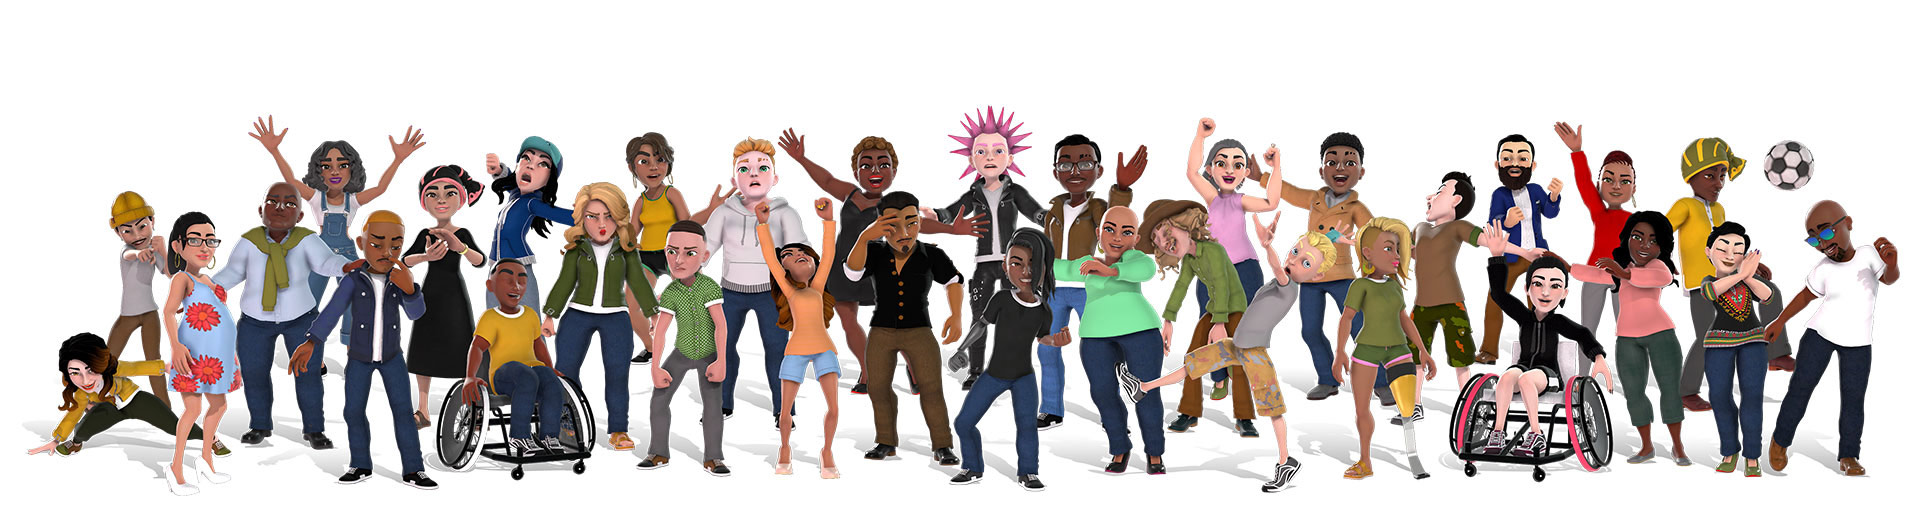 Xbox-avatarer, der viser en mangfoldig gruppe af mennesker i forskellige outfits